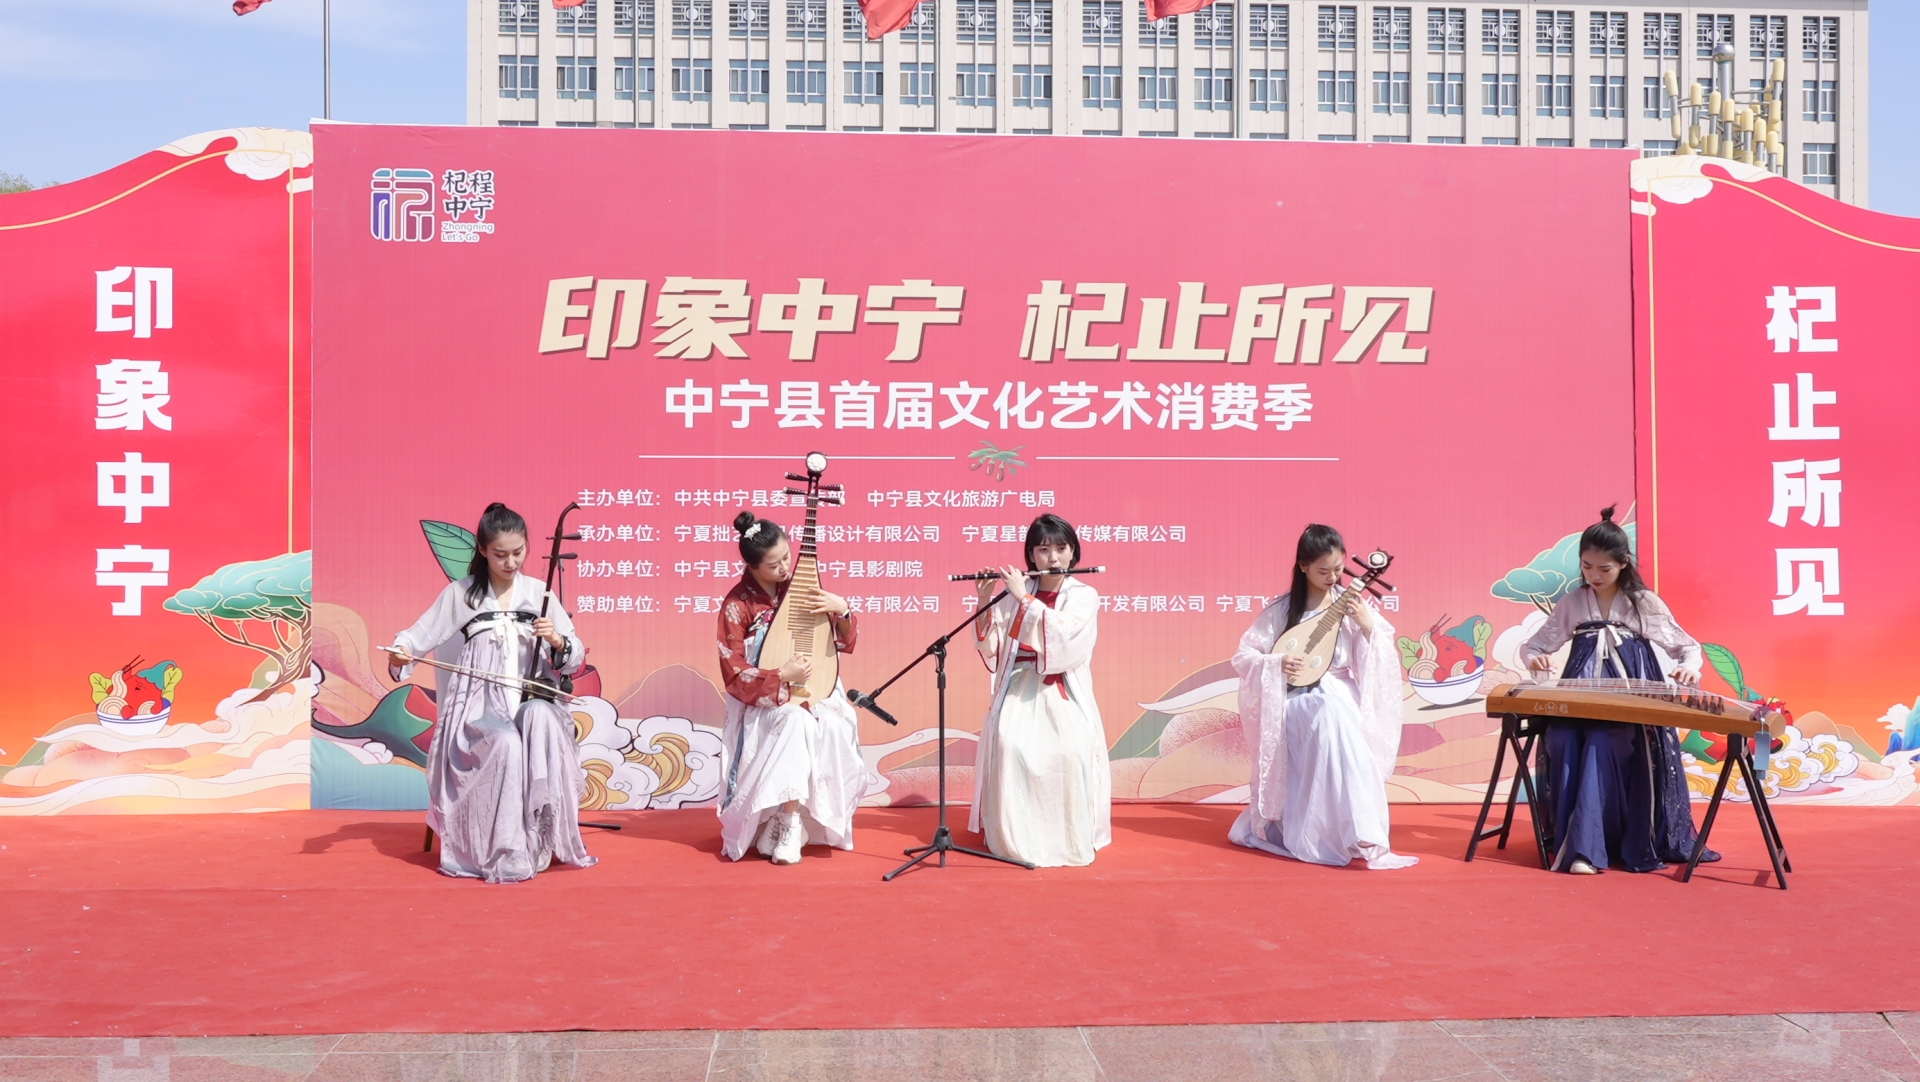 “印象中宁，杞止所见”：中宁县首届文化艺术消费季引爆五一热潮